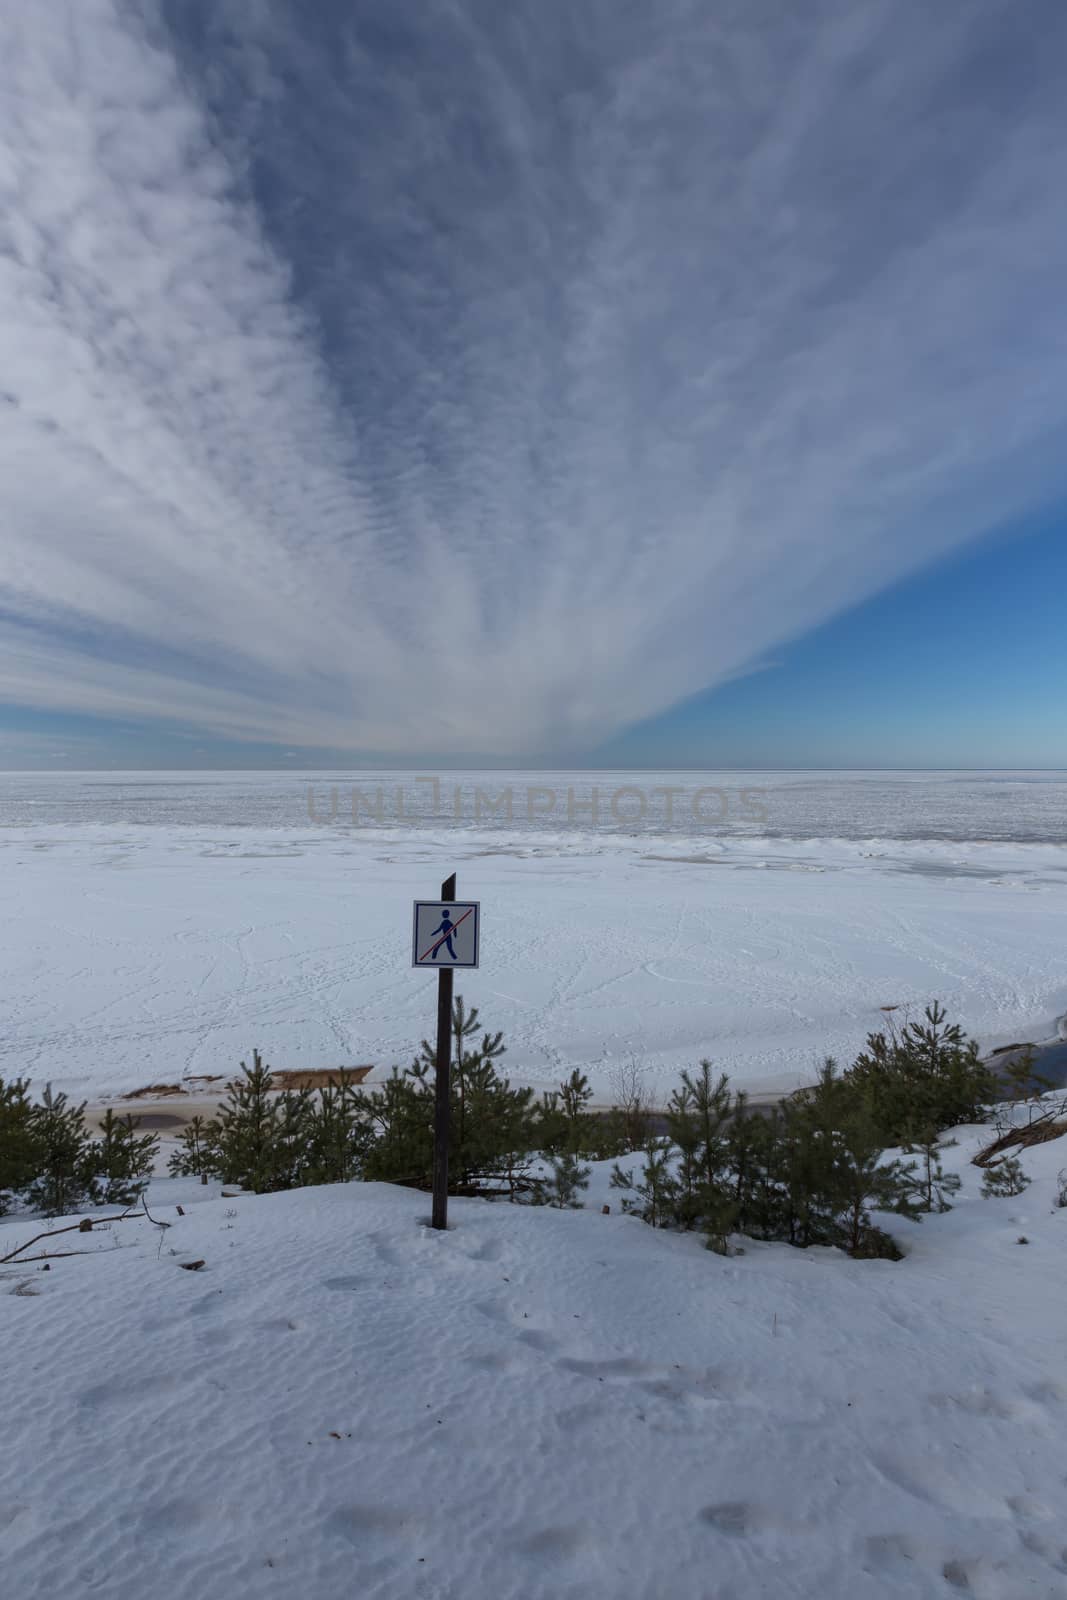 winter snow sea coast Baltic Sea Latvia Saulkrasti